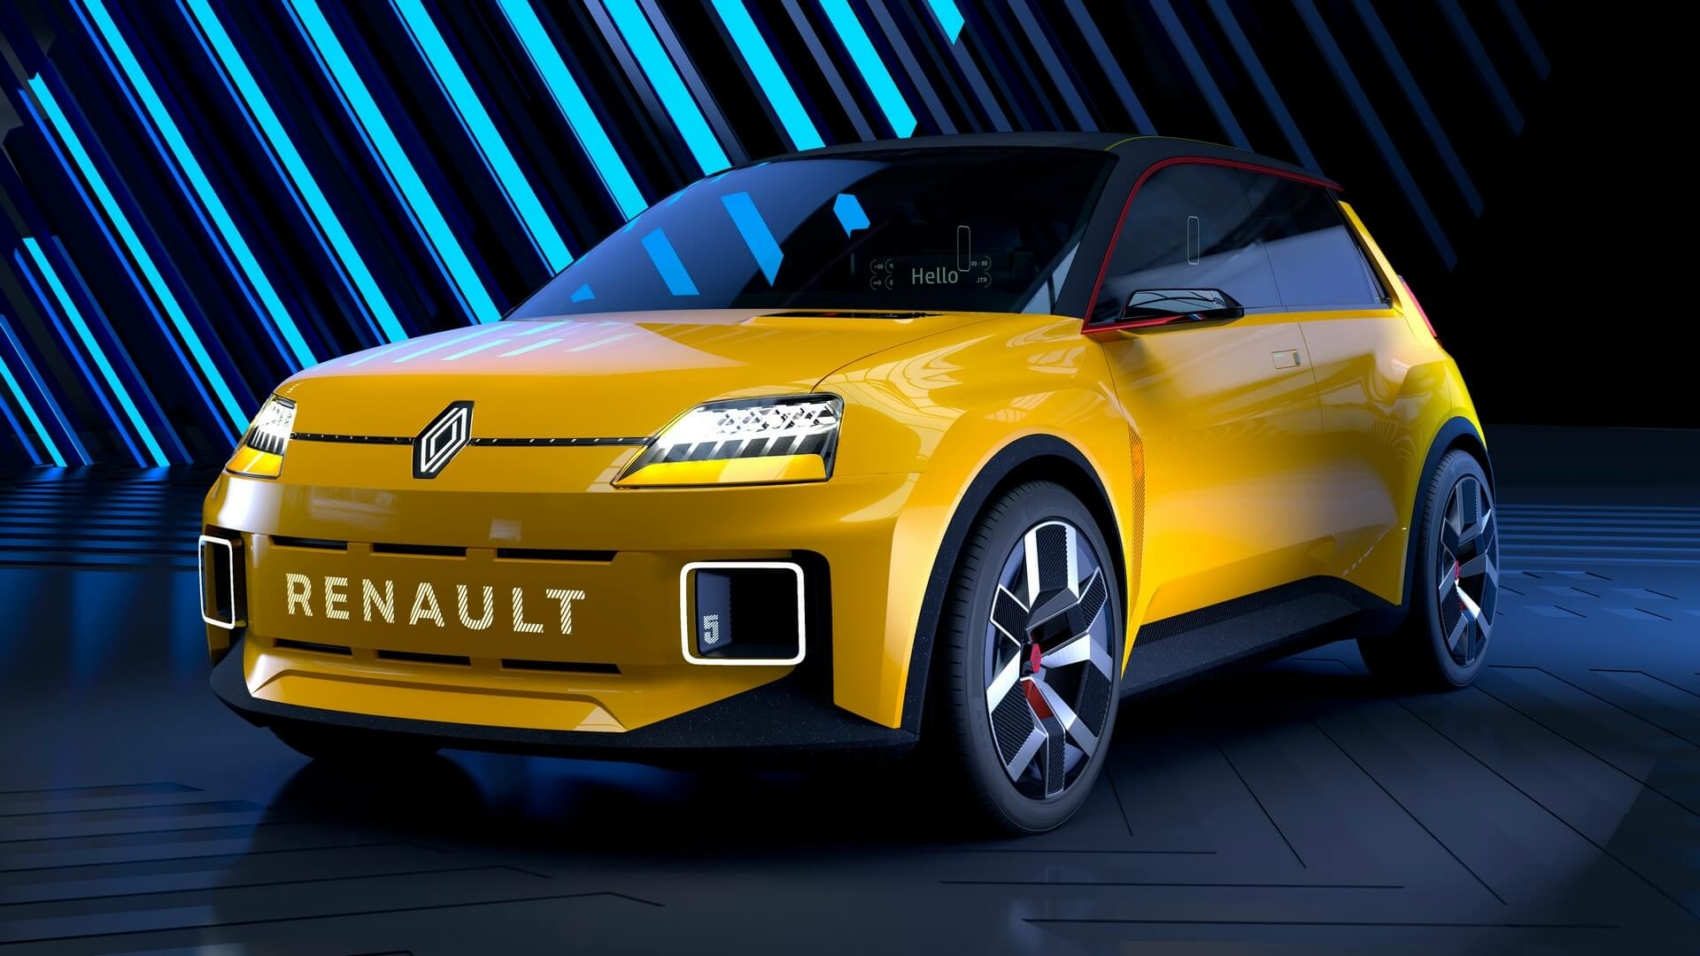 2021 Renault 5 prototype